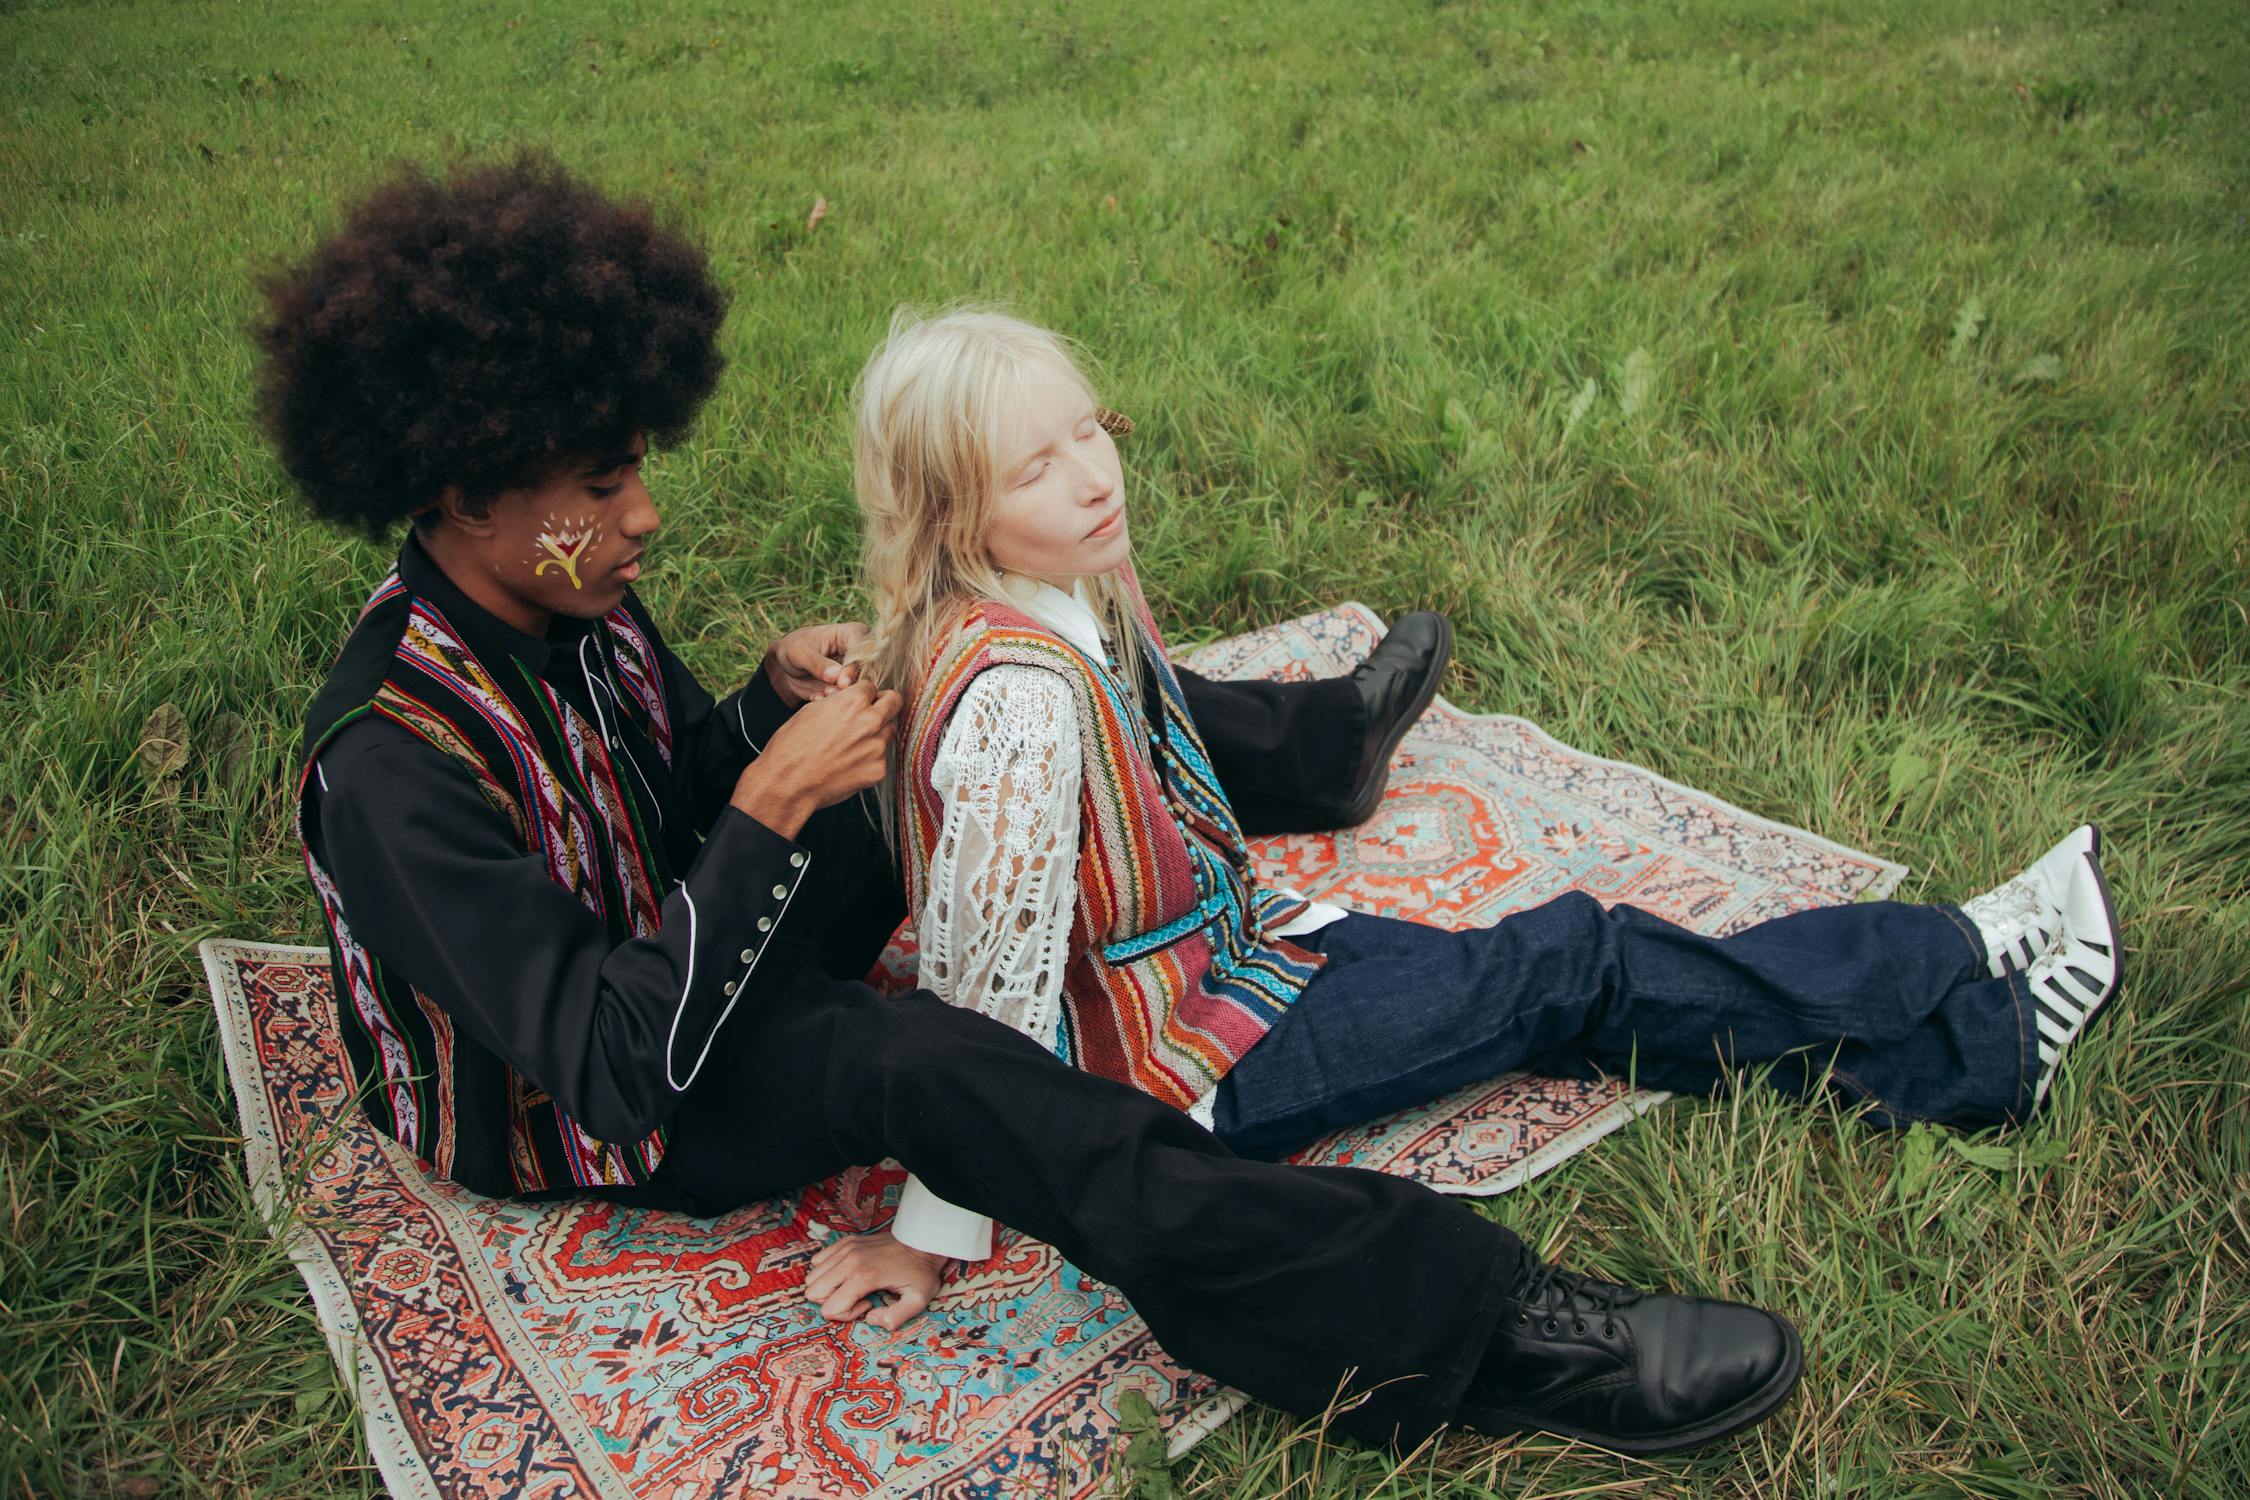 Deux personnes au look des années 70 assis dans l'herbe